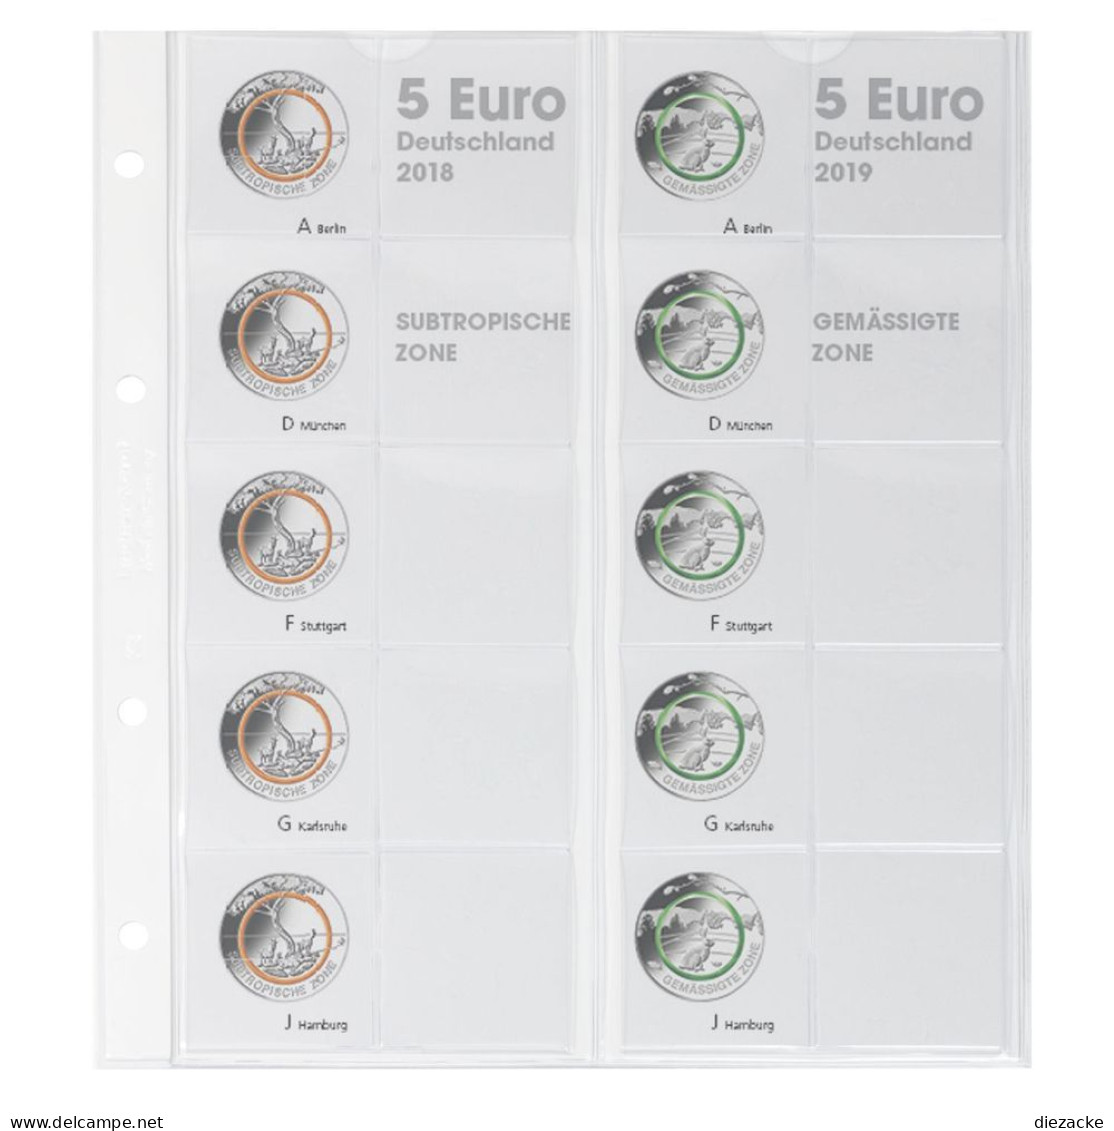 Lindner Vordruckblatt Karat Für 5 Euro-Münzen Polymerring 1119-2 Neu - Materiale